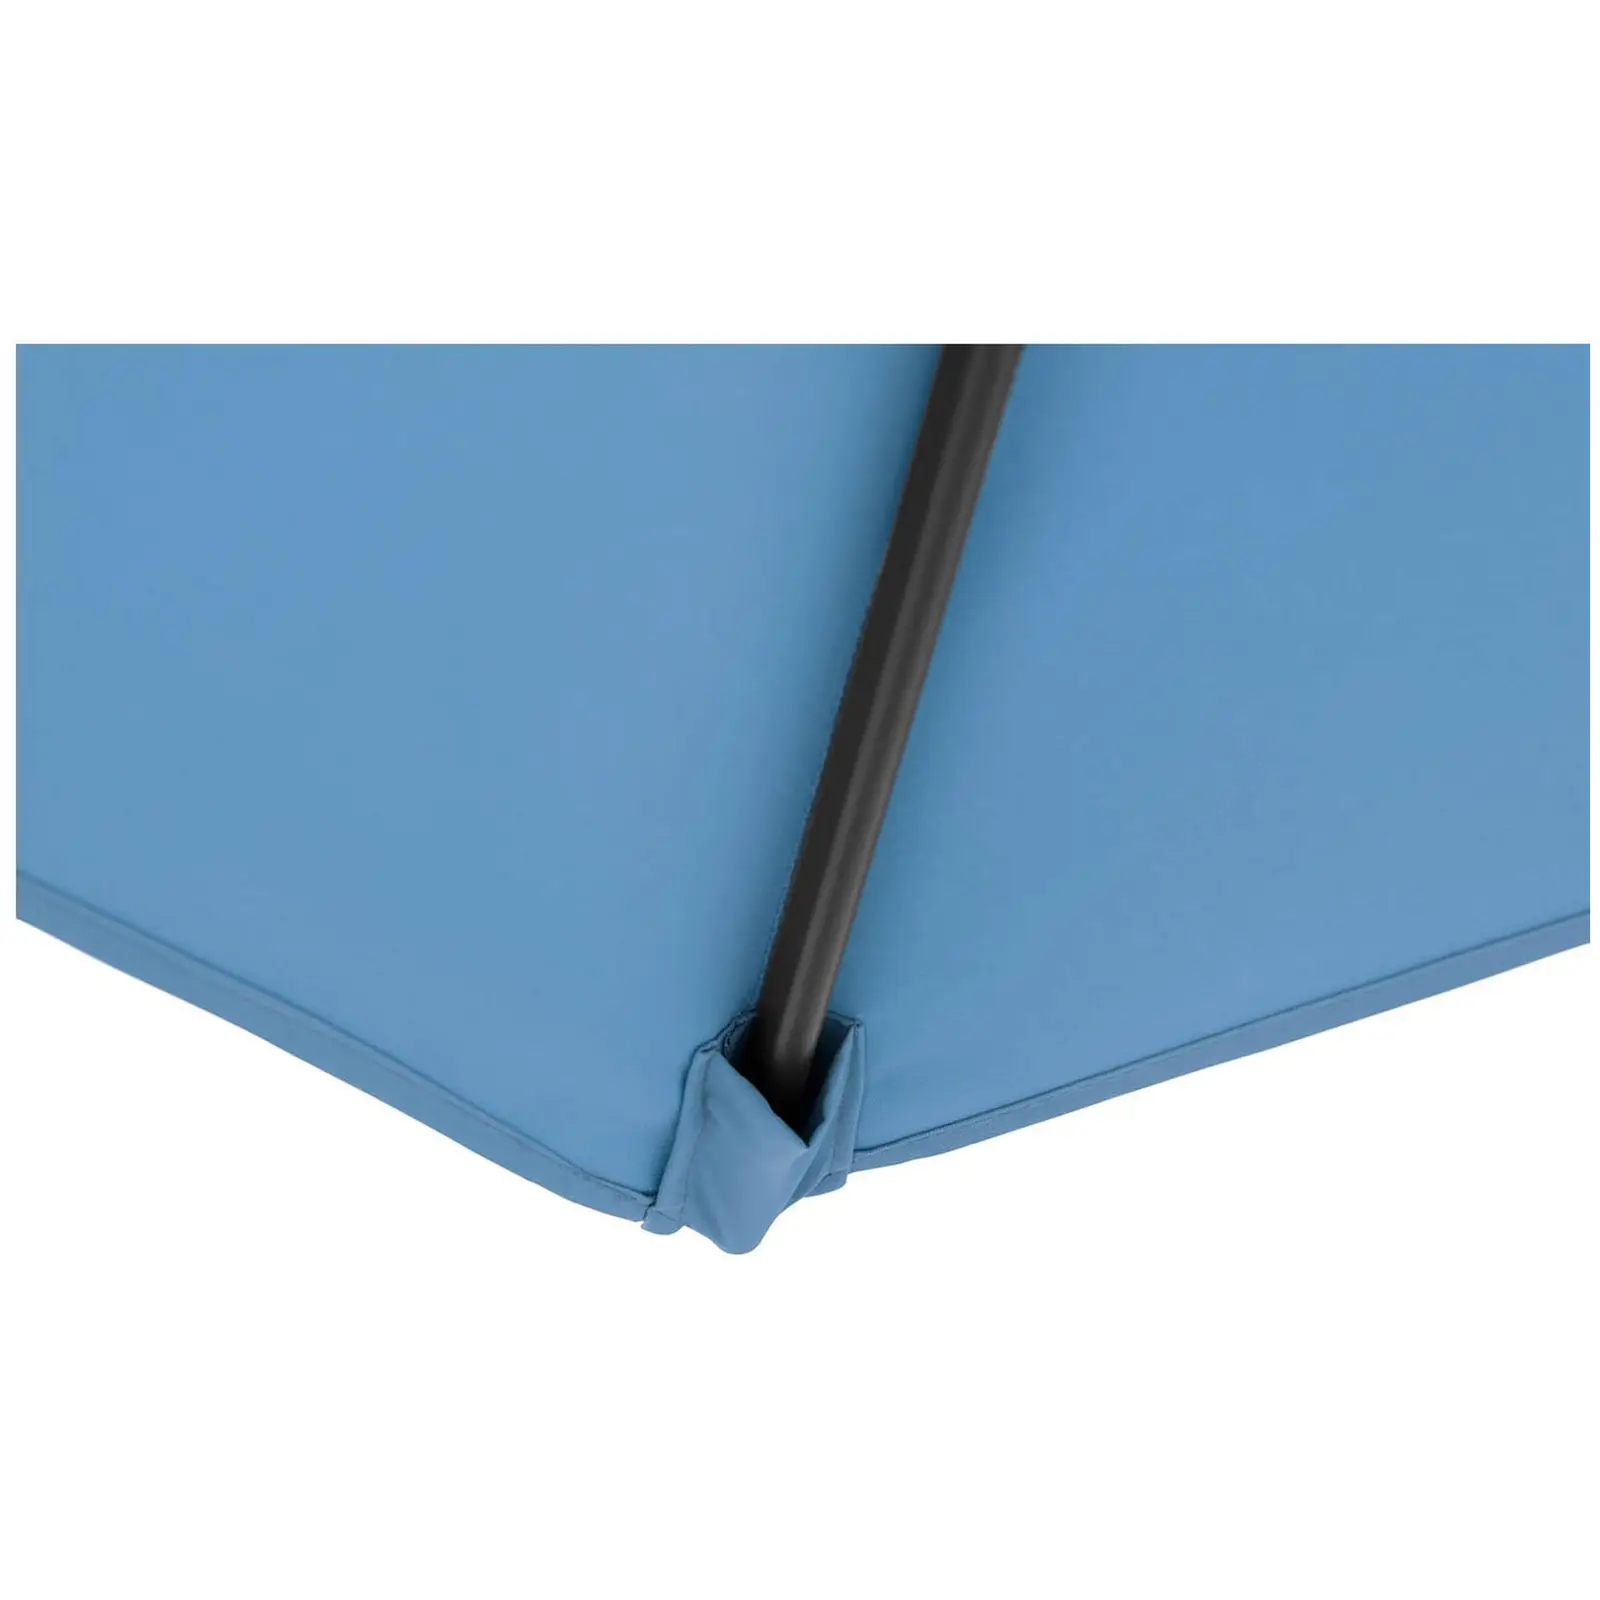 B-varer Parasoll - blå - rektangulær - 200 x 300 cm - vippbar